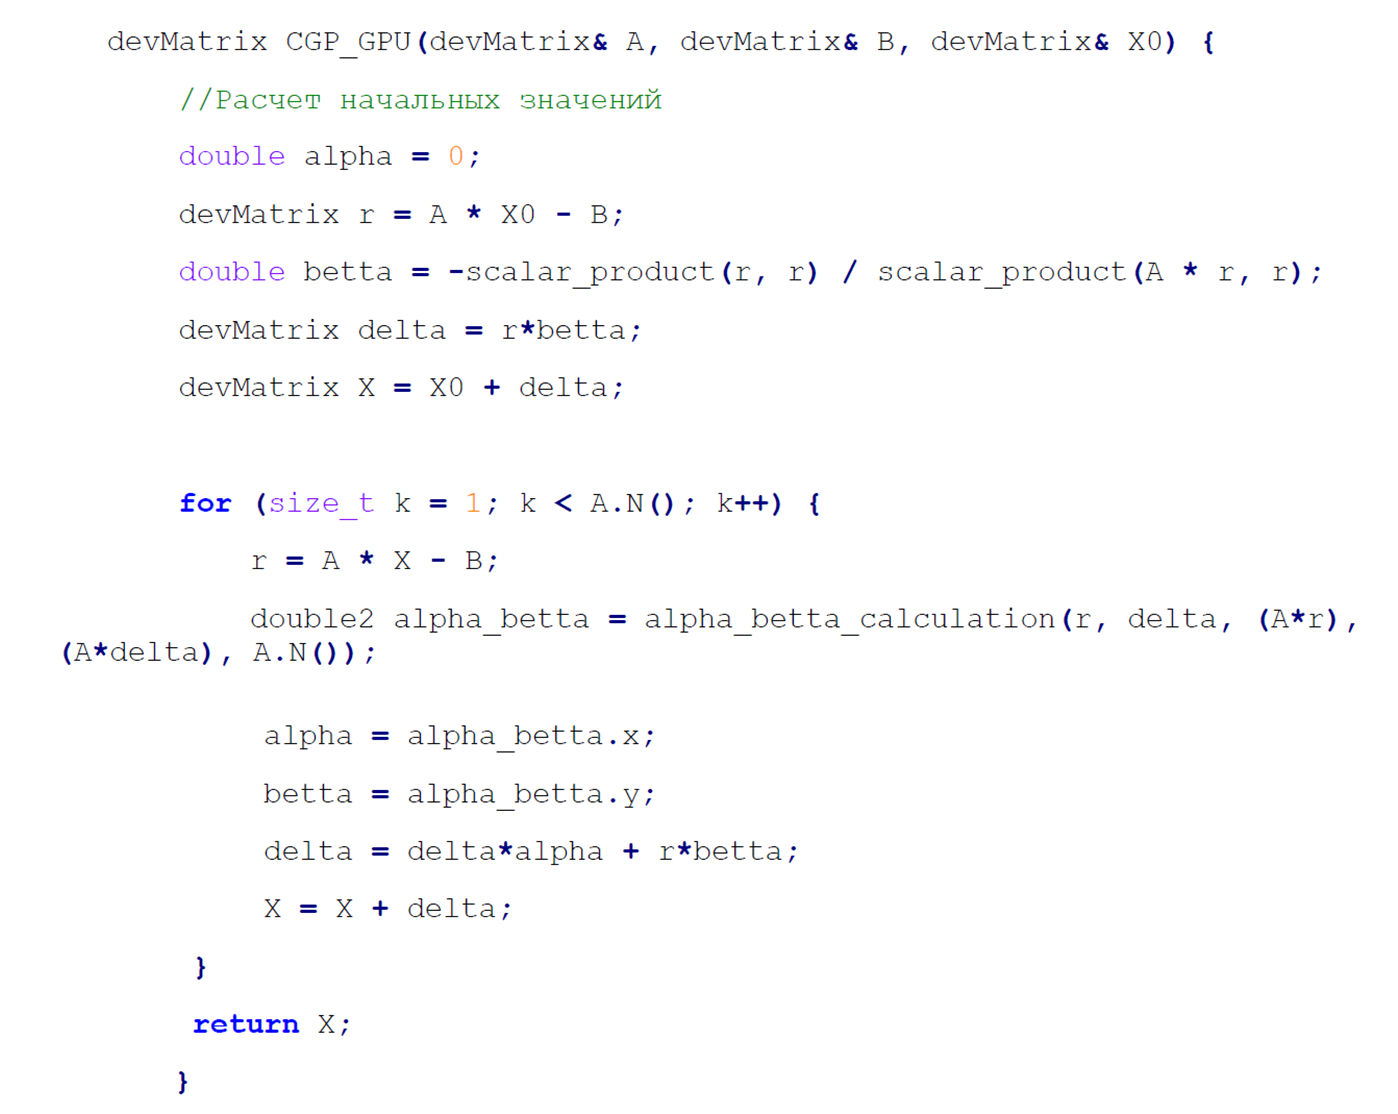 Вид итогового алгоритма с учетом построенных инструментов для работы с матрицами